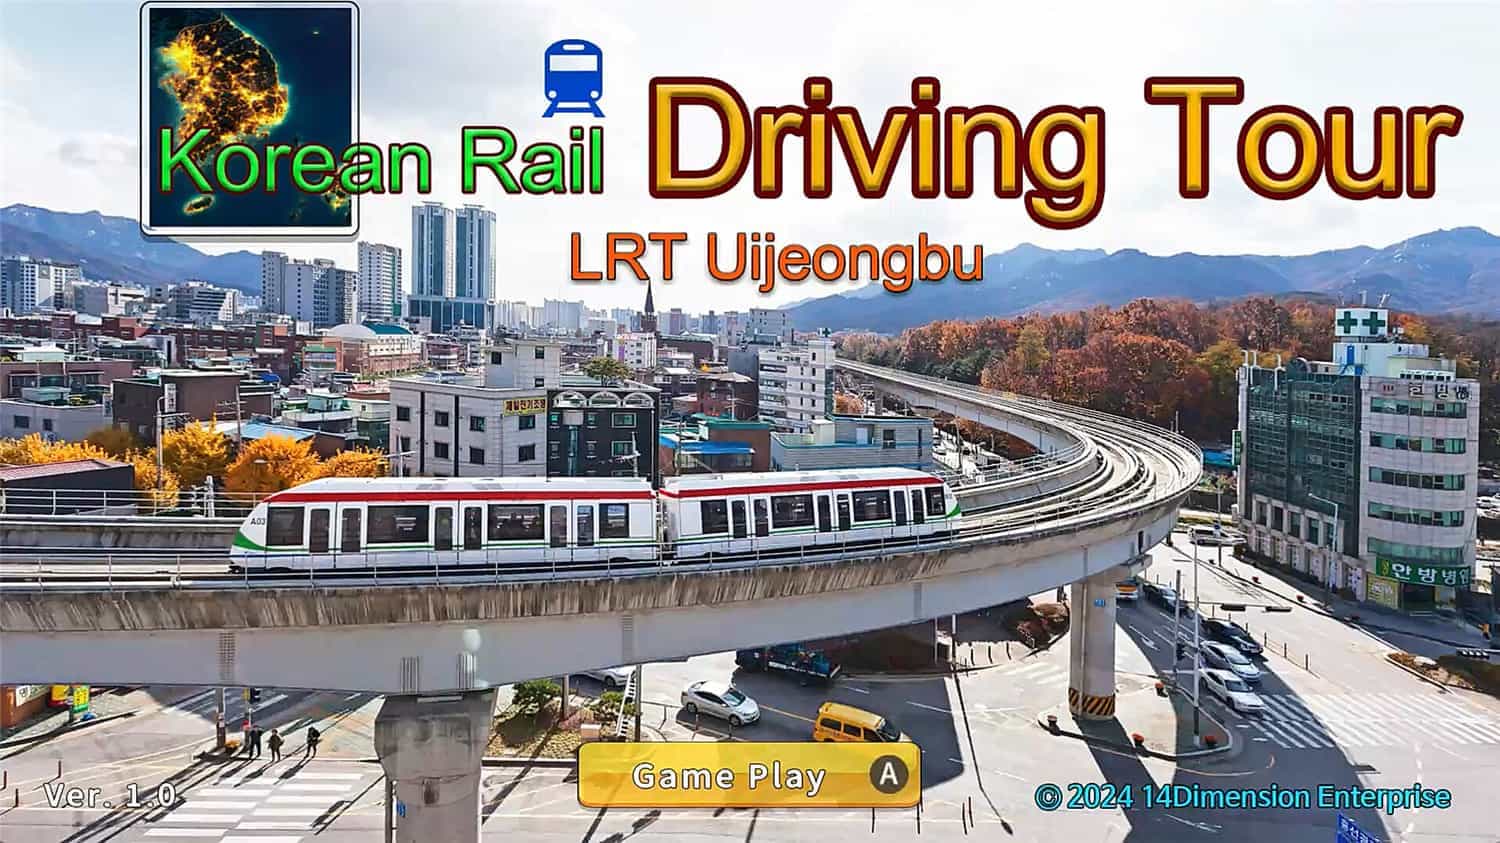 韩国轨道驾驶之旅：轻轨乌镇部/Korean Rail Driving Tour-LRT Uijeongbu-1